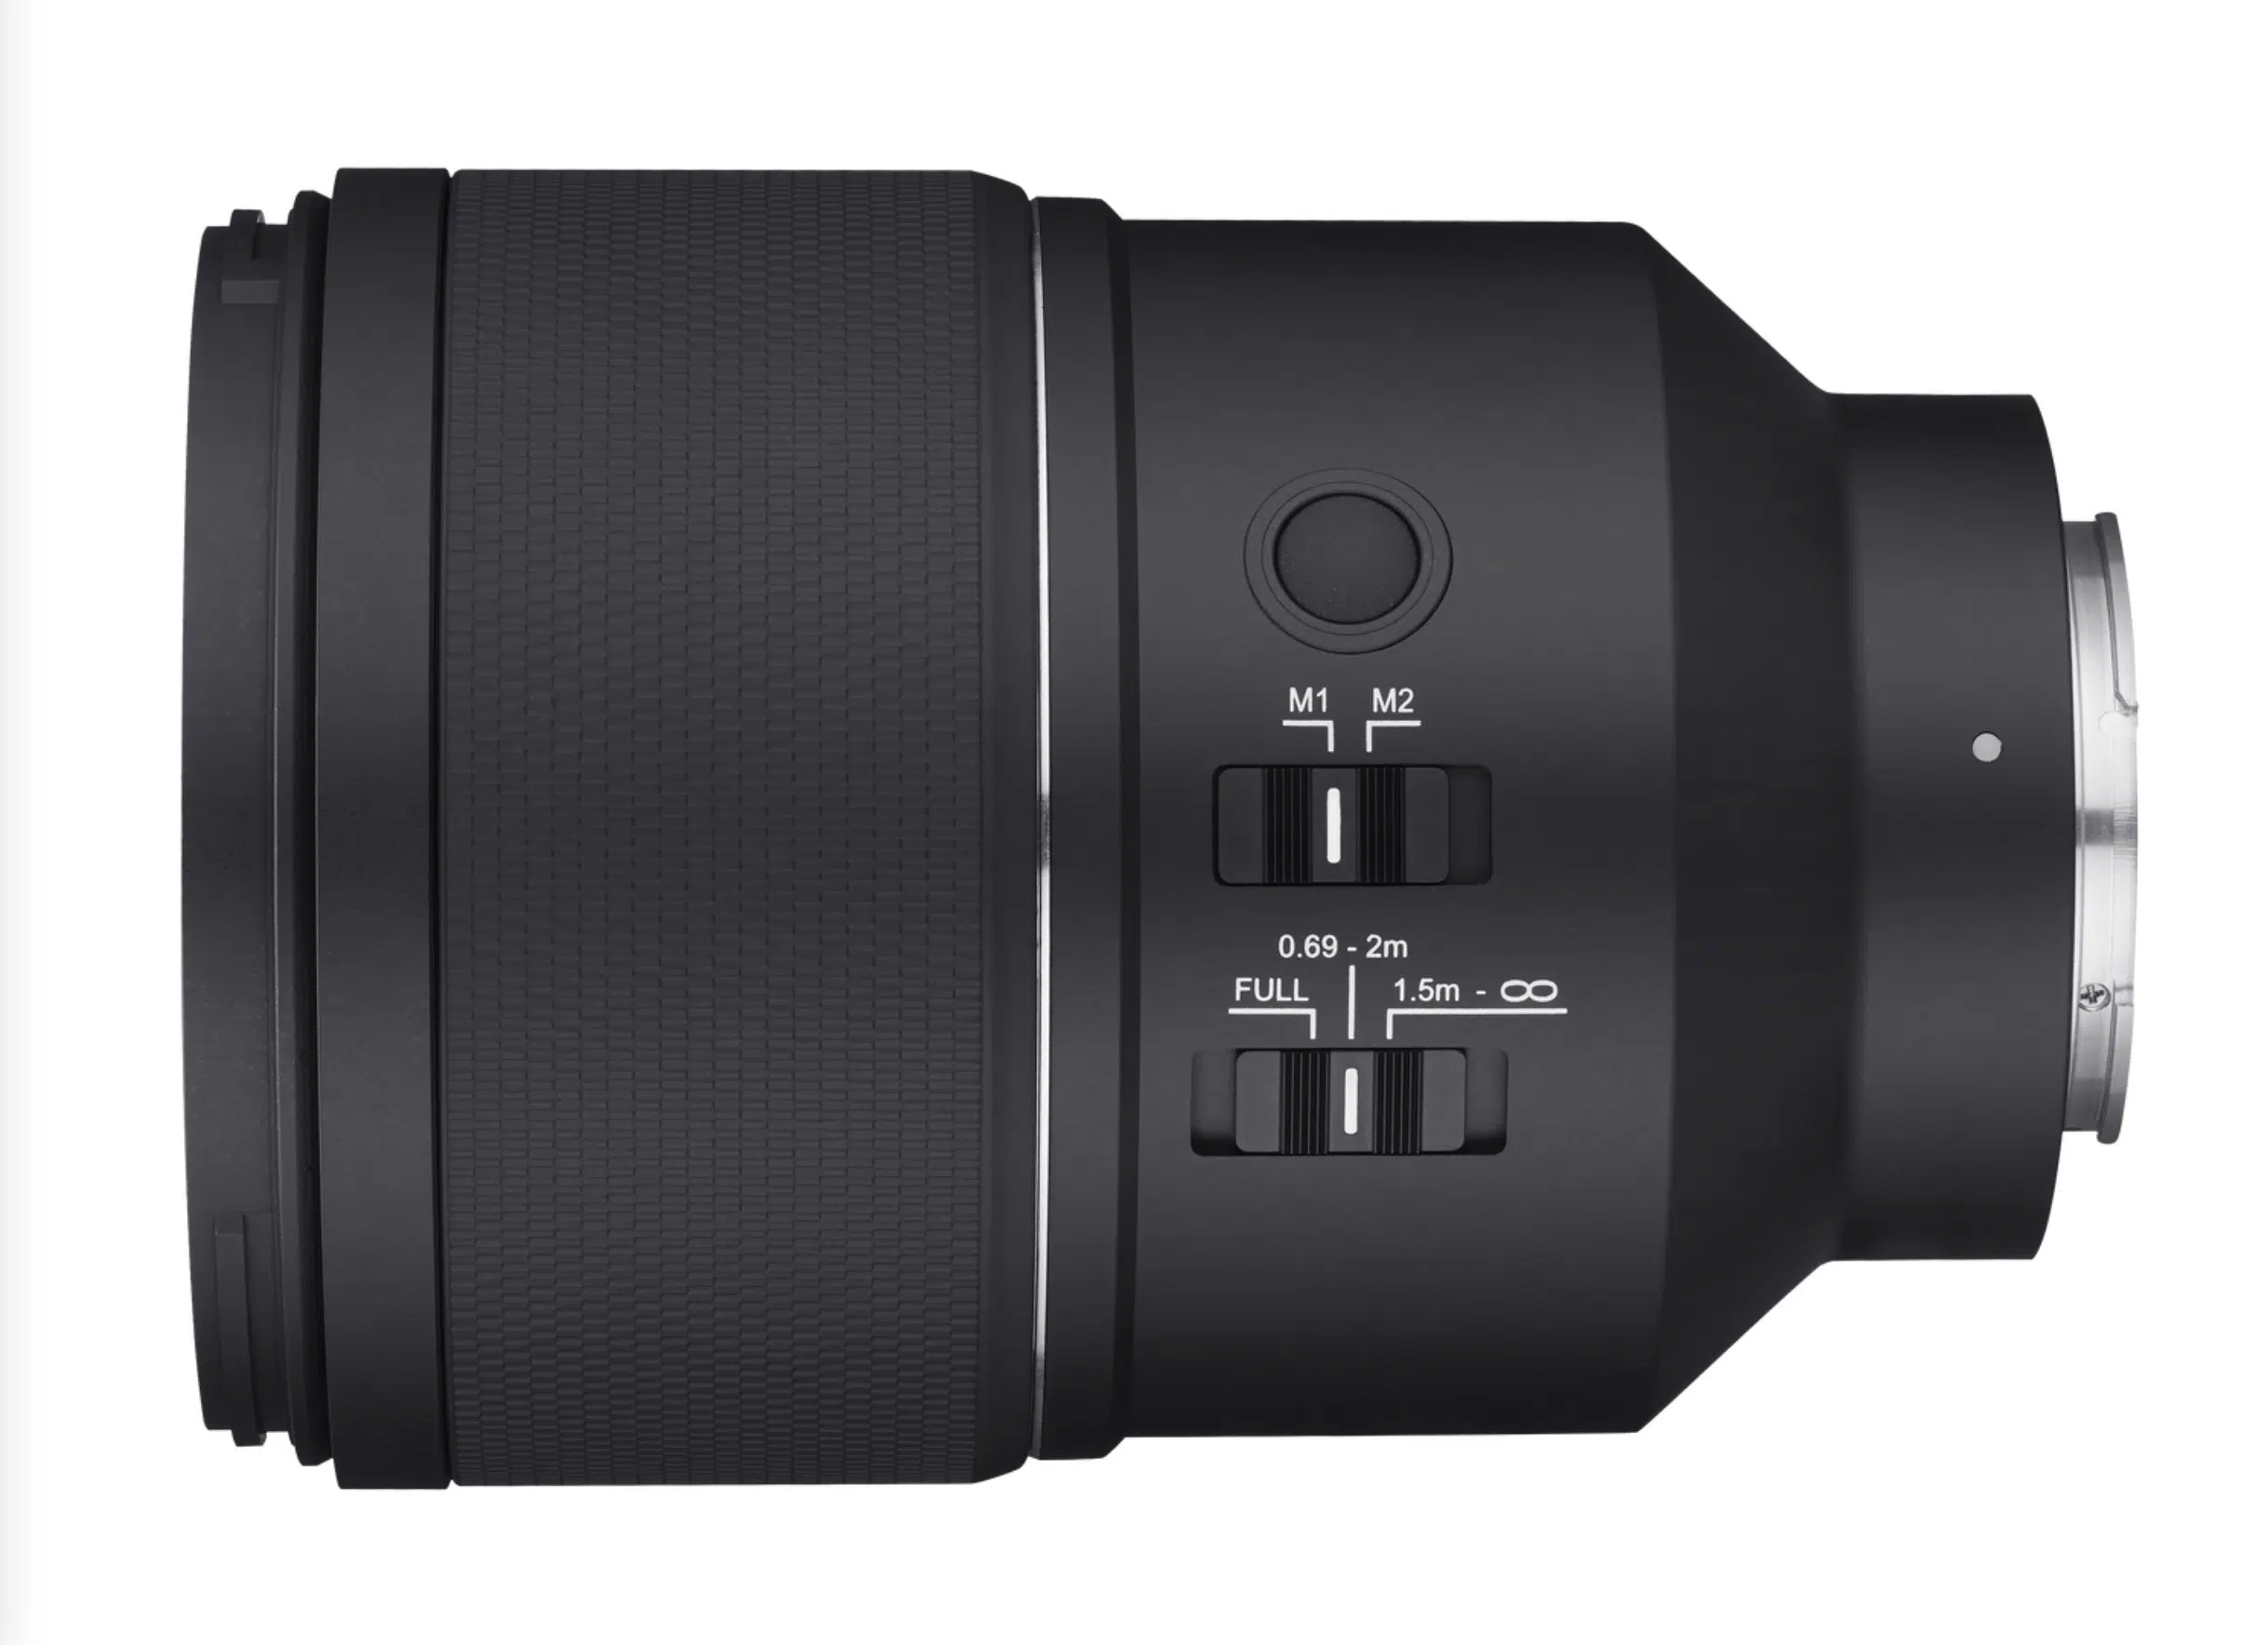 Ống kính Samyang AF 135mm F1.8 cho Sony E